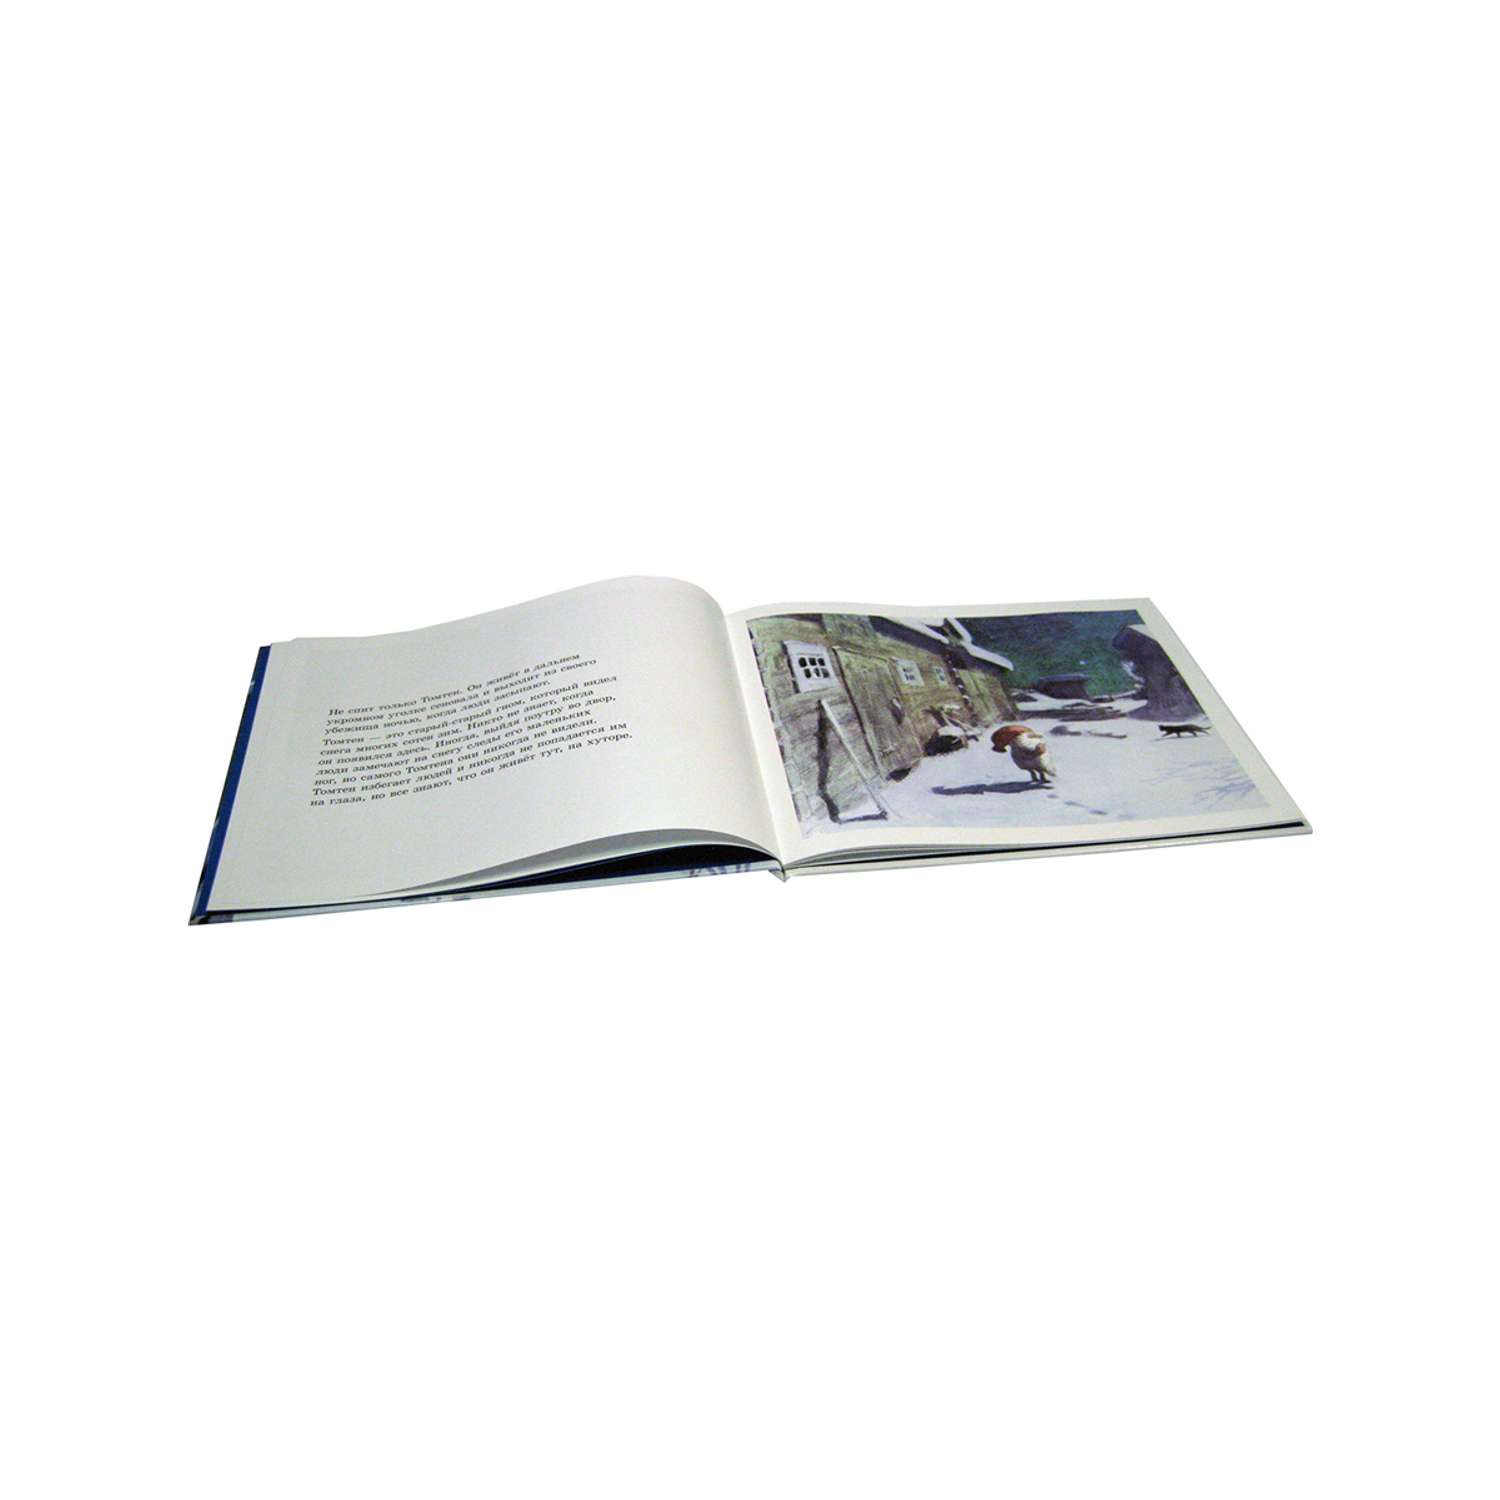 Комплект Добрая книга Томтен + Томтен и лис / Астрид Линдгрен - фото 7